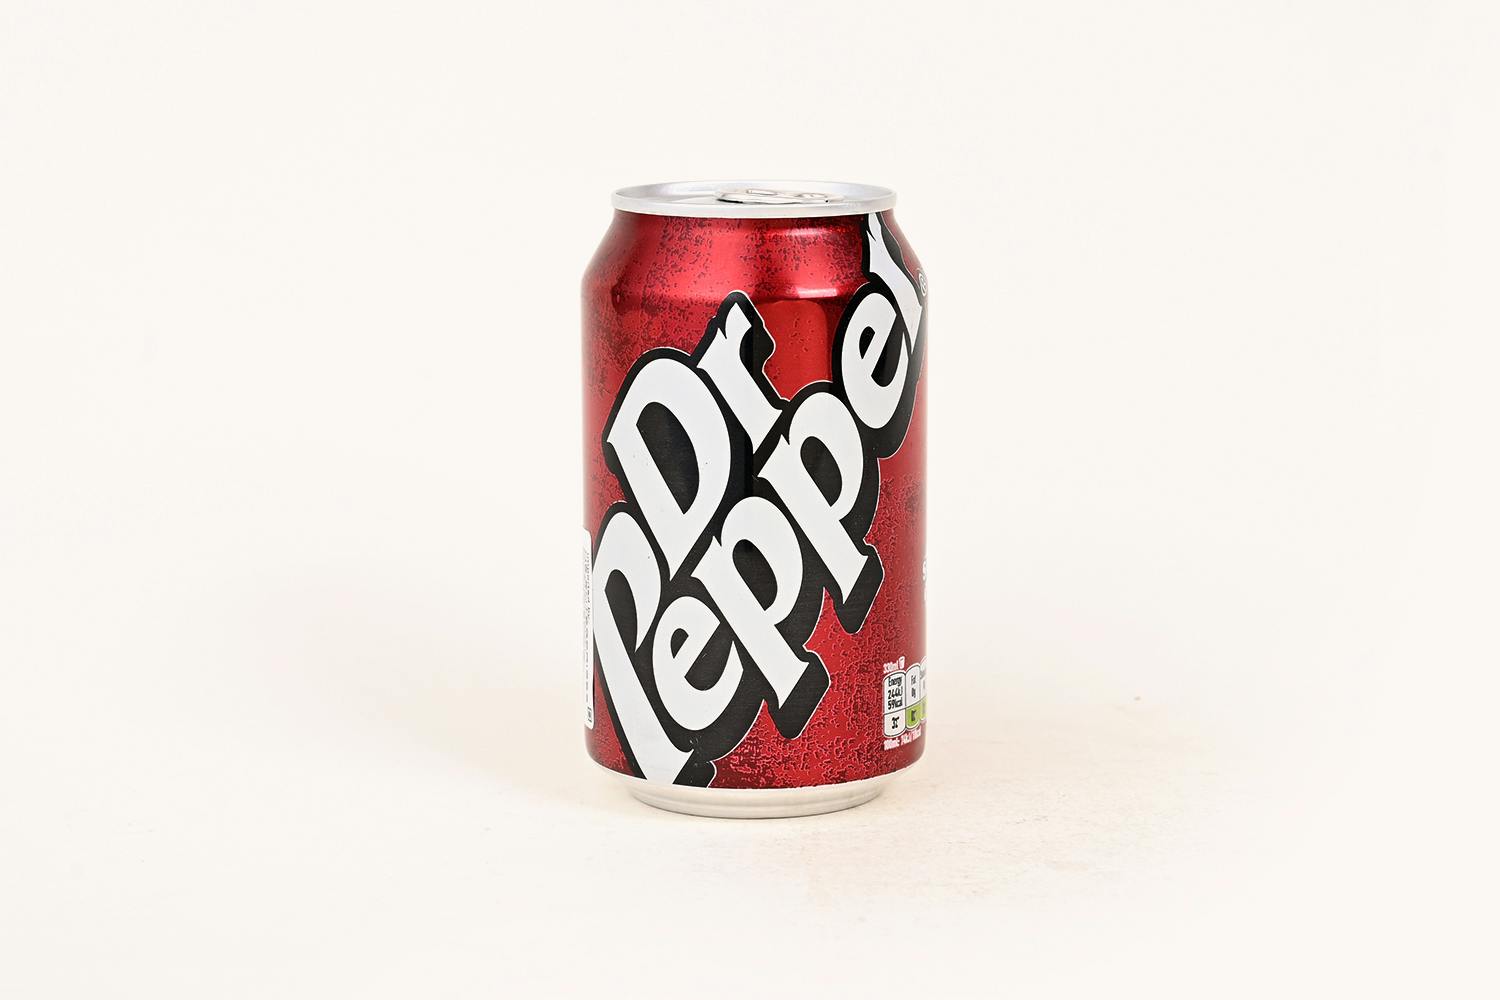 Dr. Pepper Soda